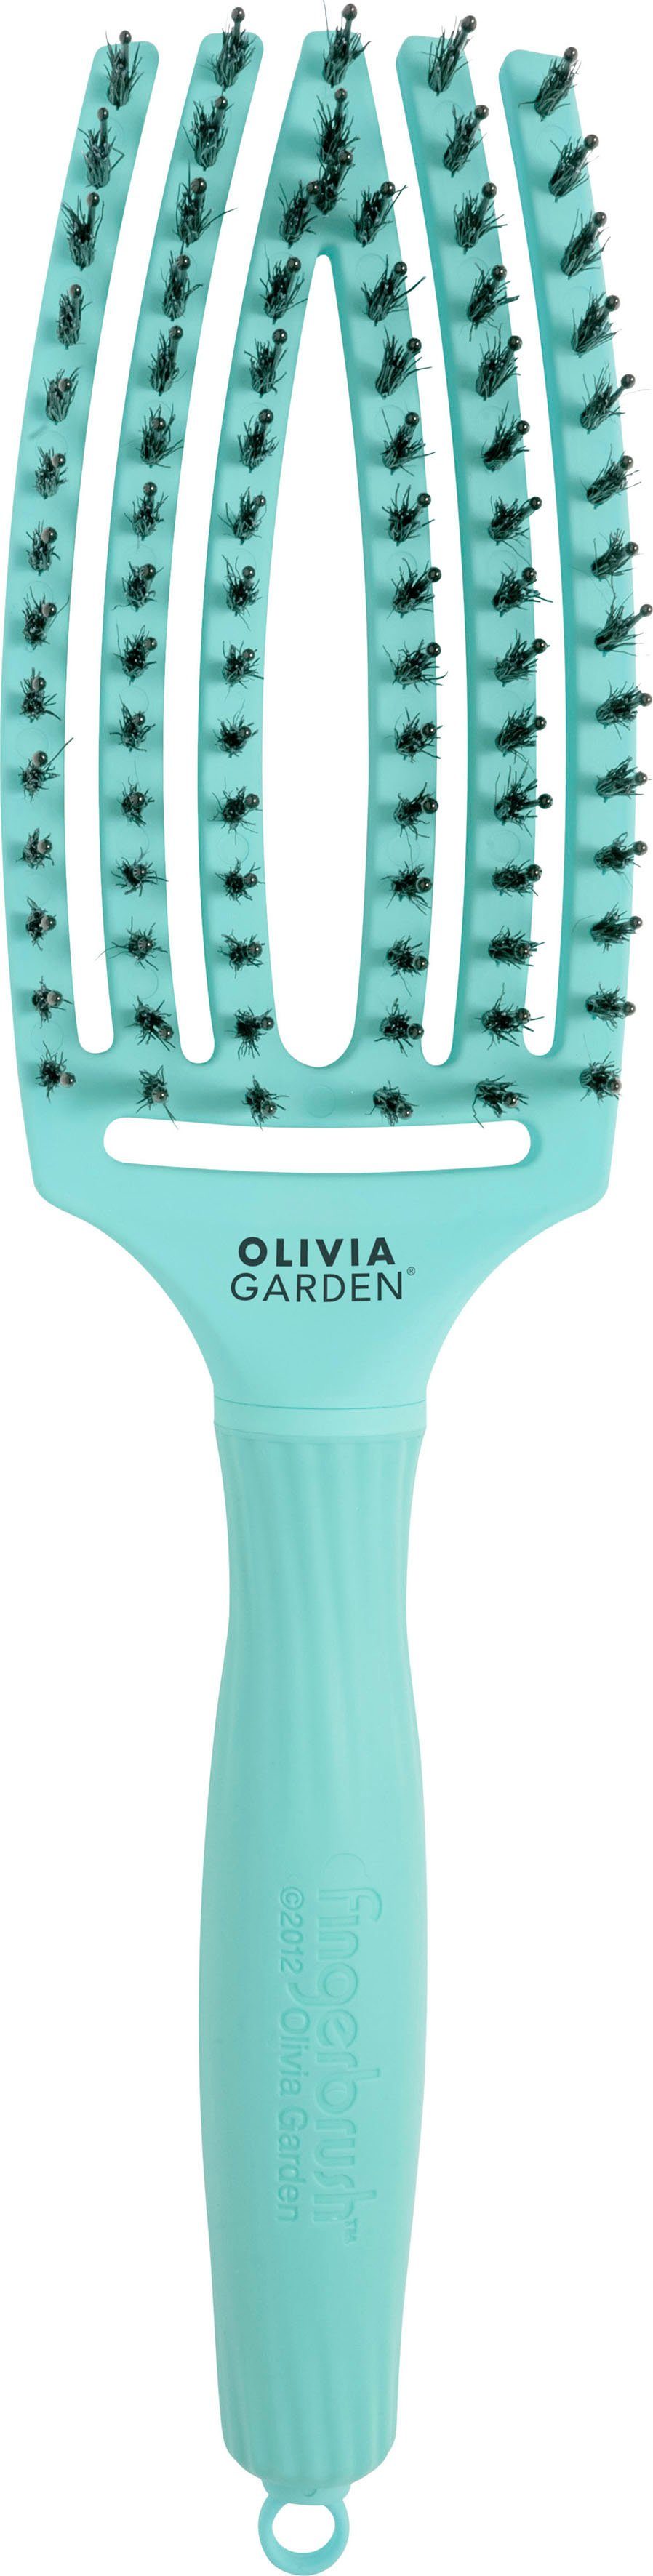 OLIVIA GARDEN Haarbürste Fingerbrush Combo Medium mint | Haarbürsten